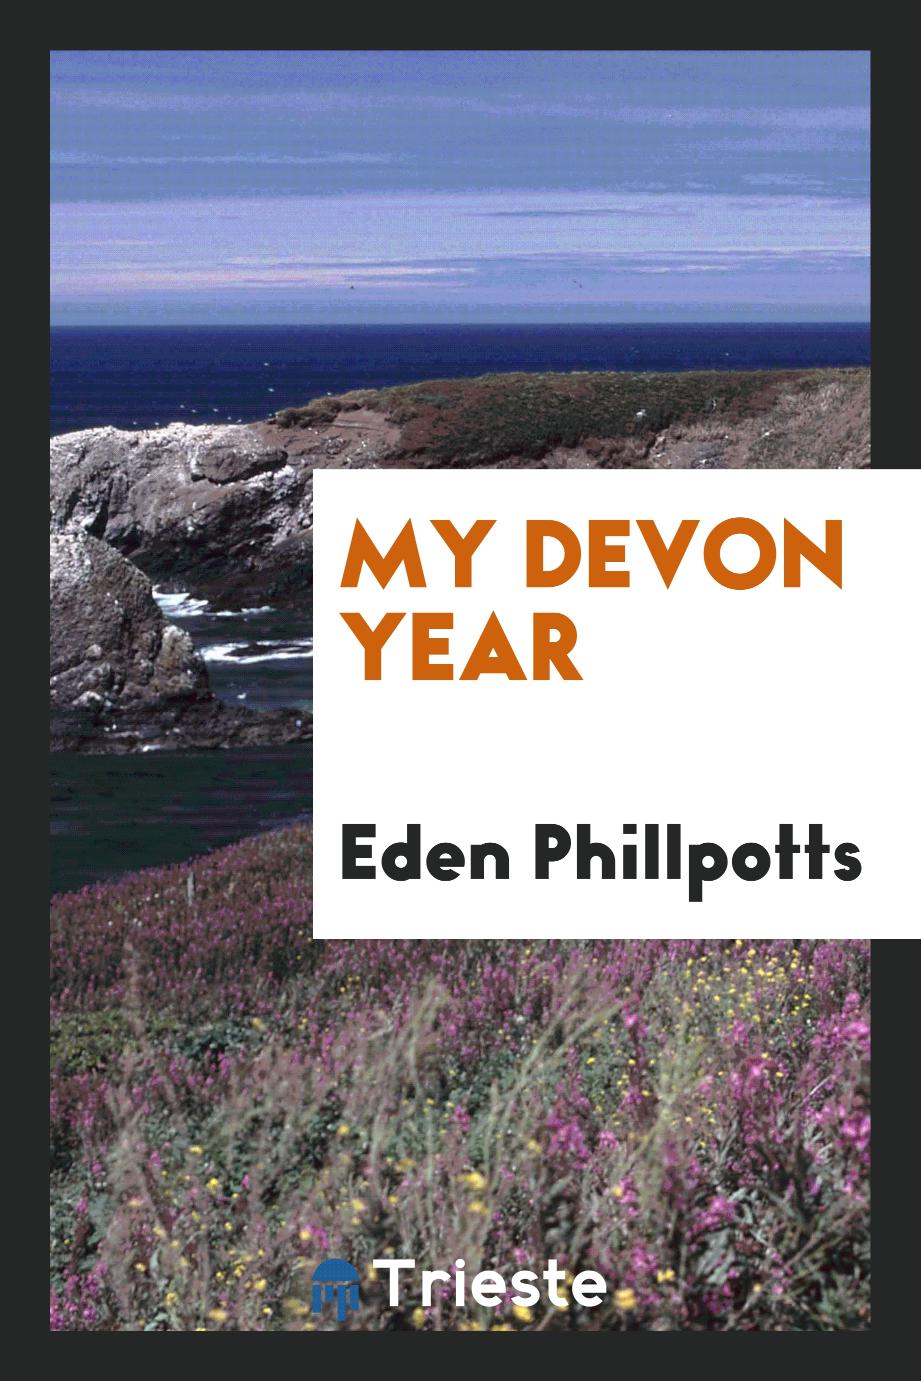 My Devon year